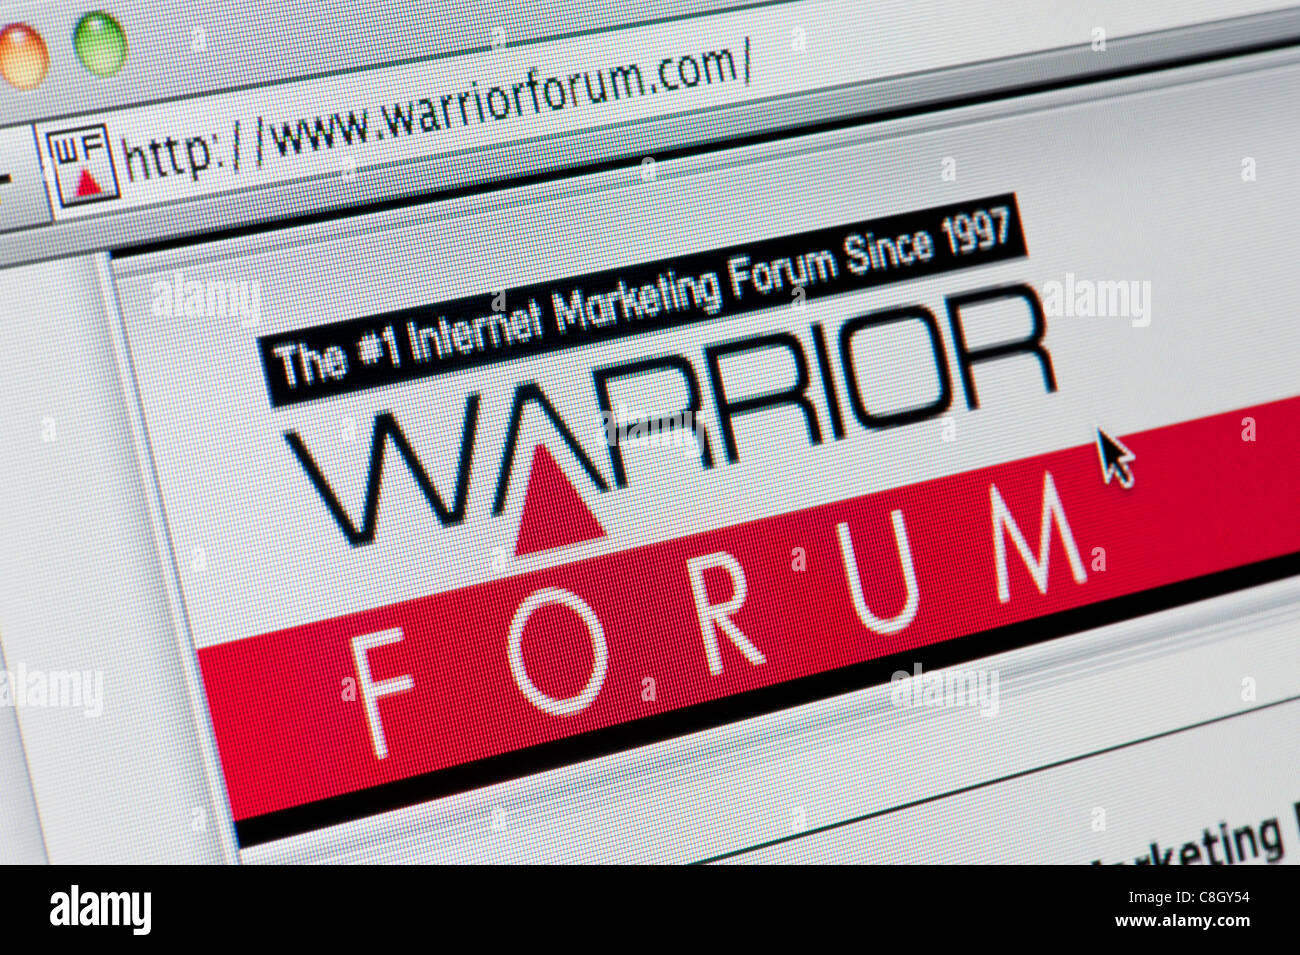 VOIPJOY - Warrior Forum